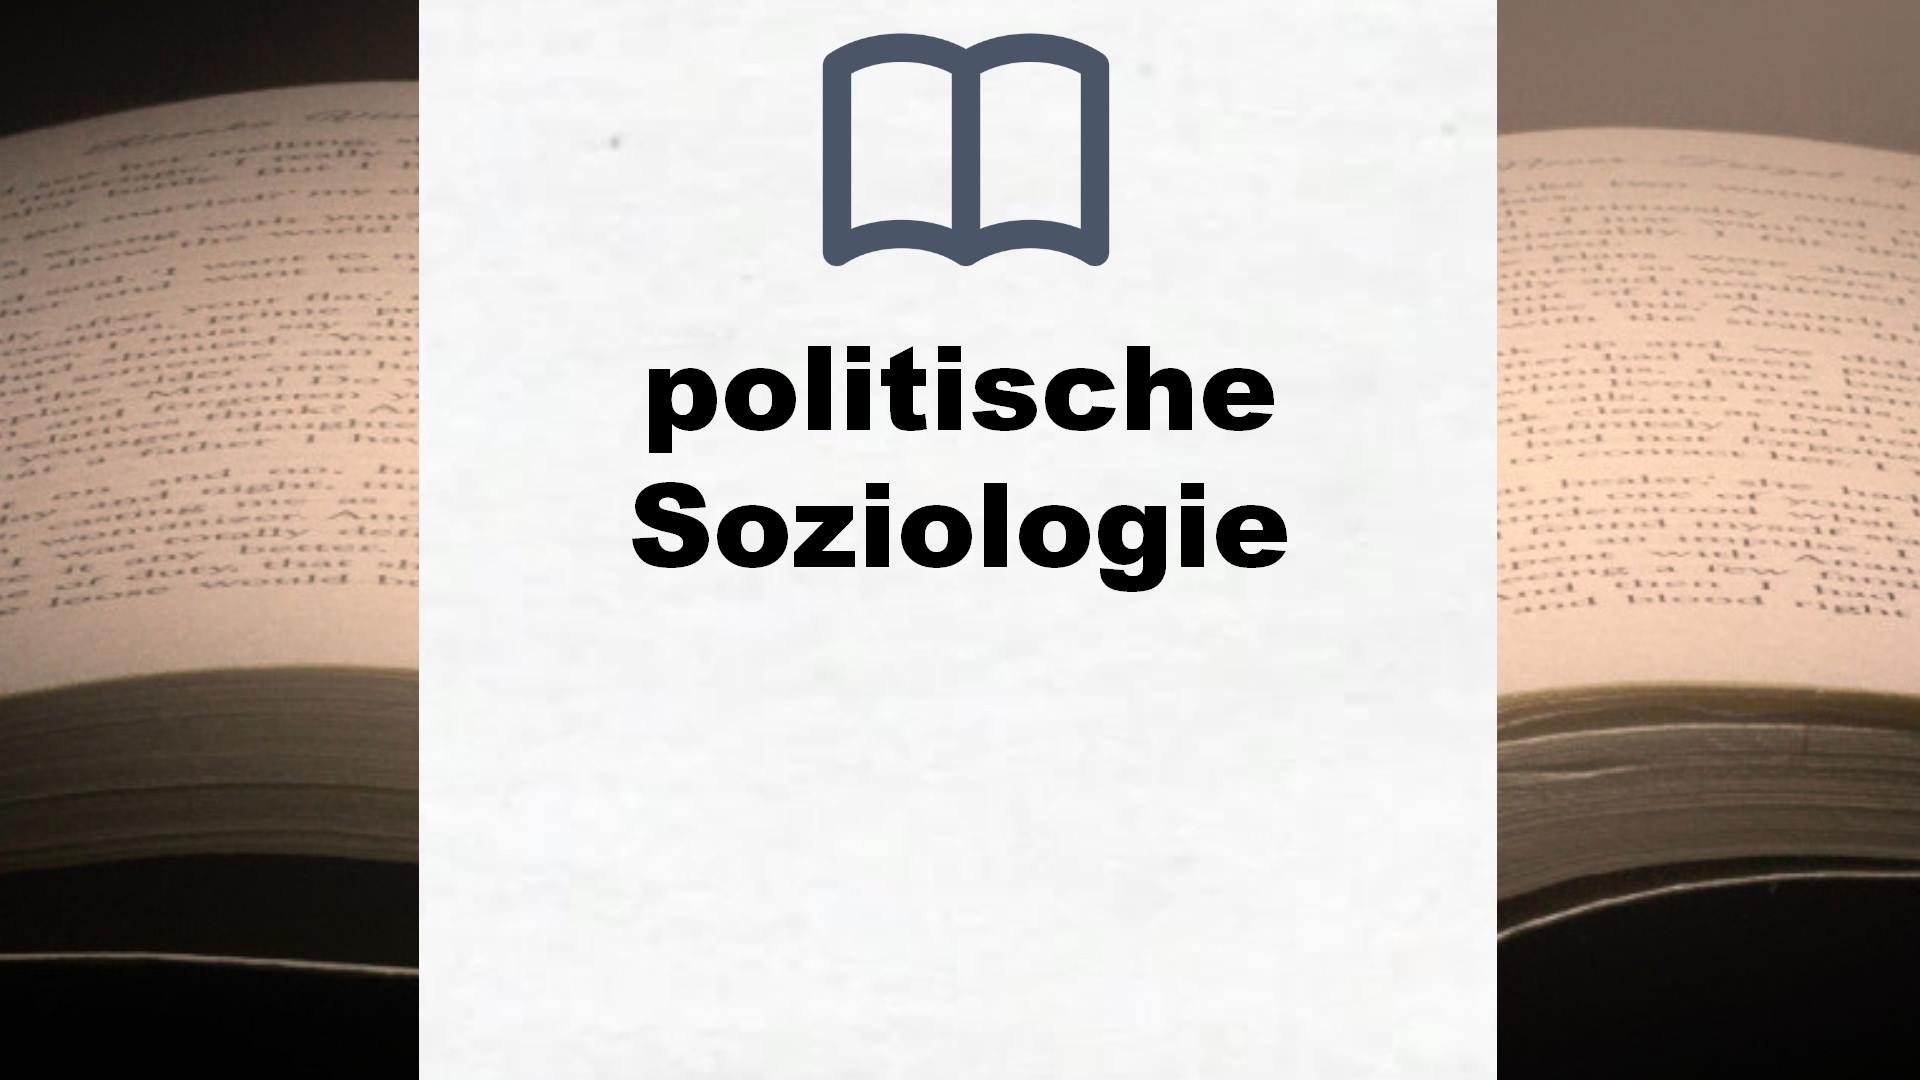 Bücher über politische Soziologie